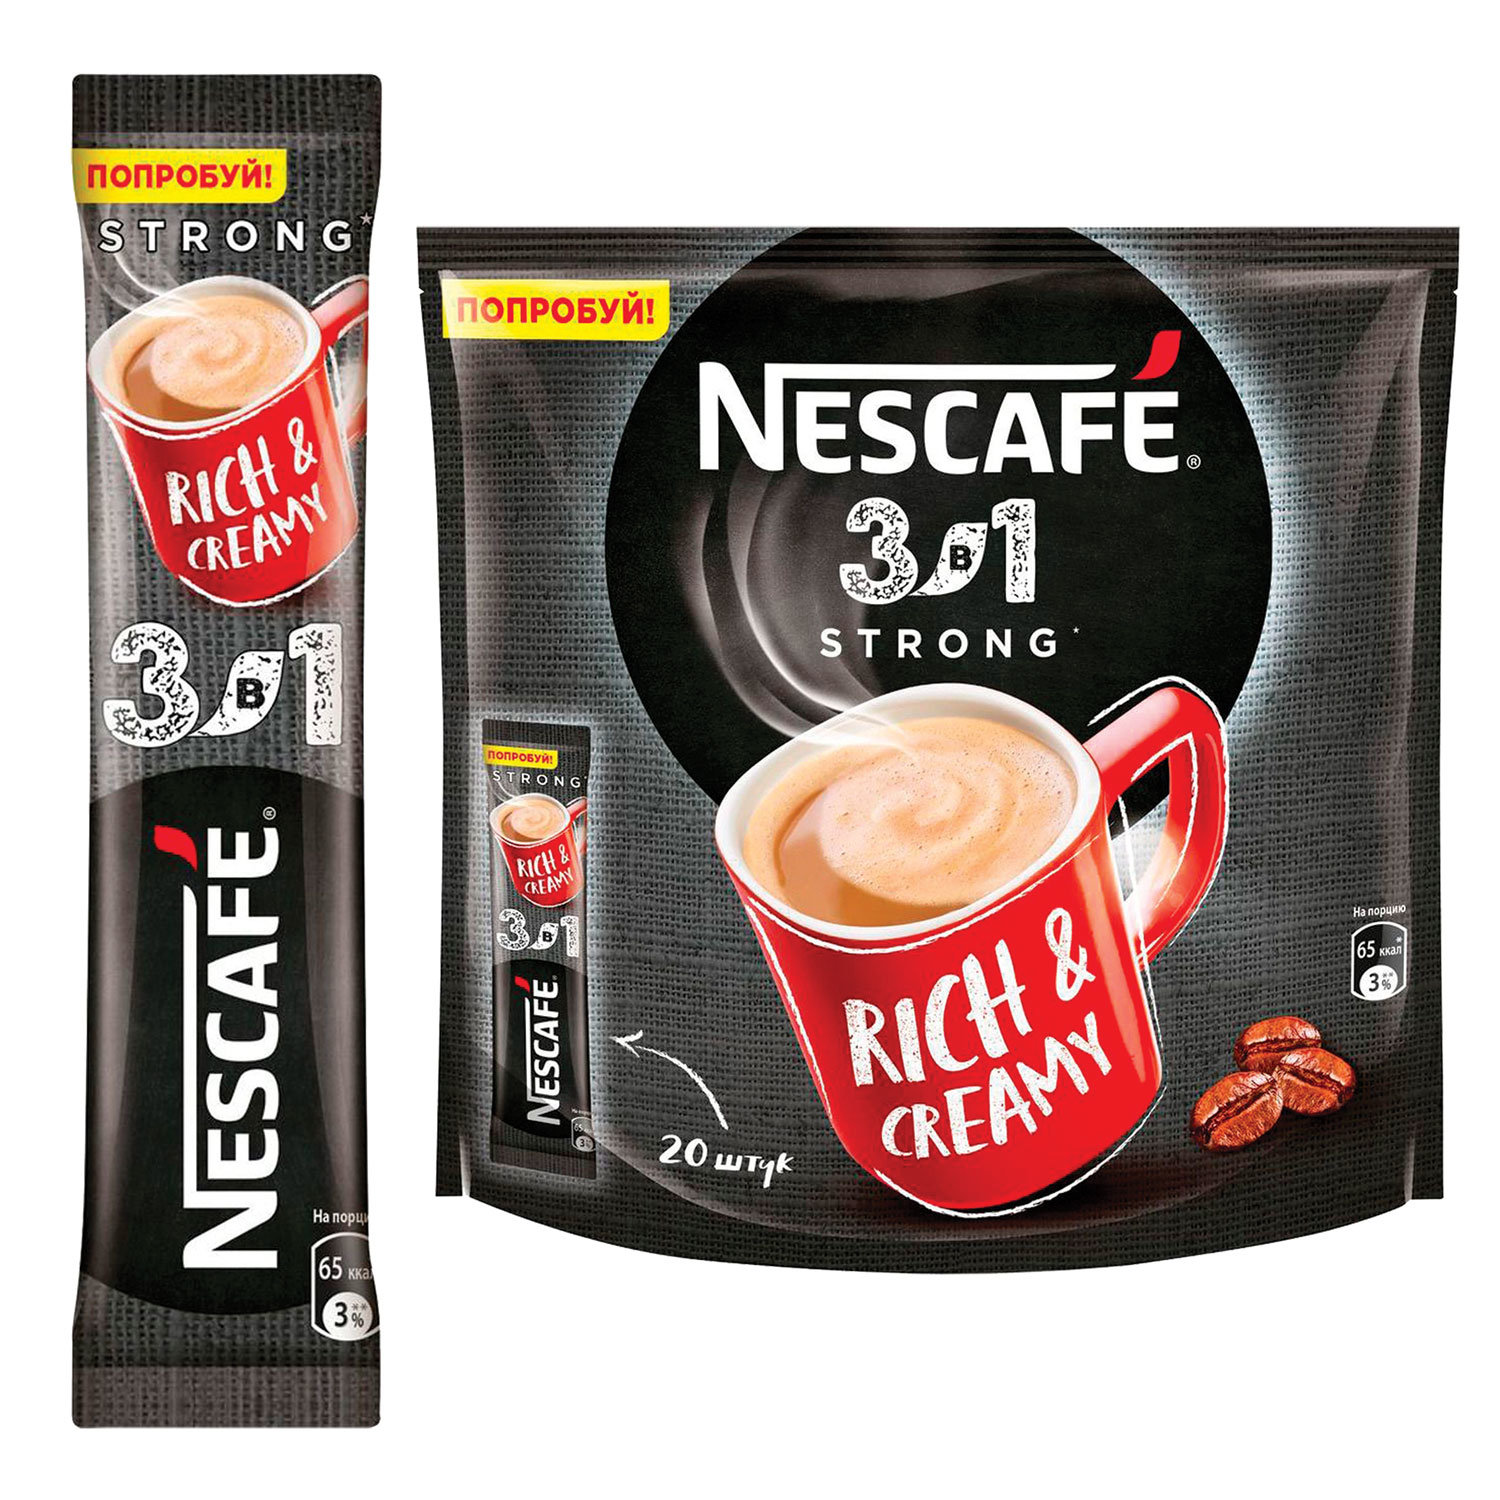 Кофе нескафе спб. Nescafe 3в1 Rich & creamy. Кофе Нескафе 3 в 1 14,5г крепкий 20*20. Нескафе 3в1 кофе Классик 14,5гр упаковка стики. Кофе в пакетиках 3 в 1 Nescafe.